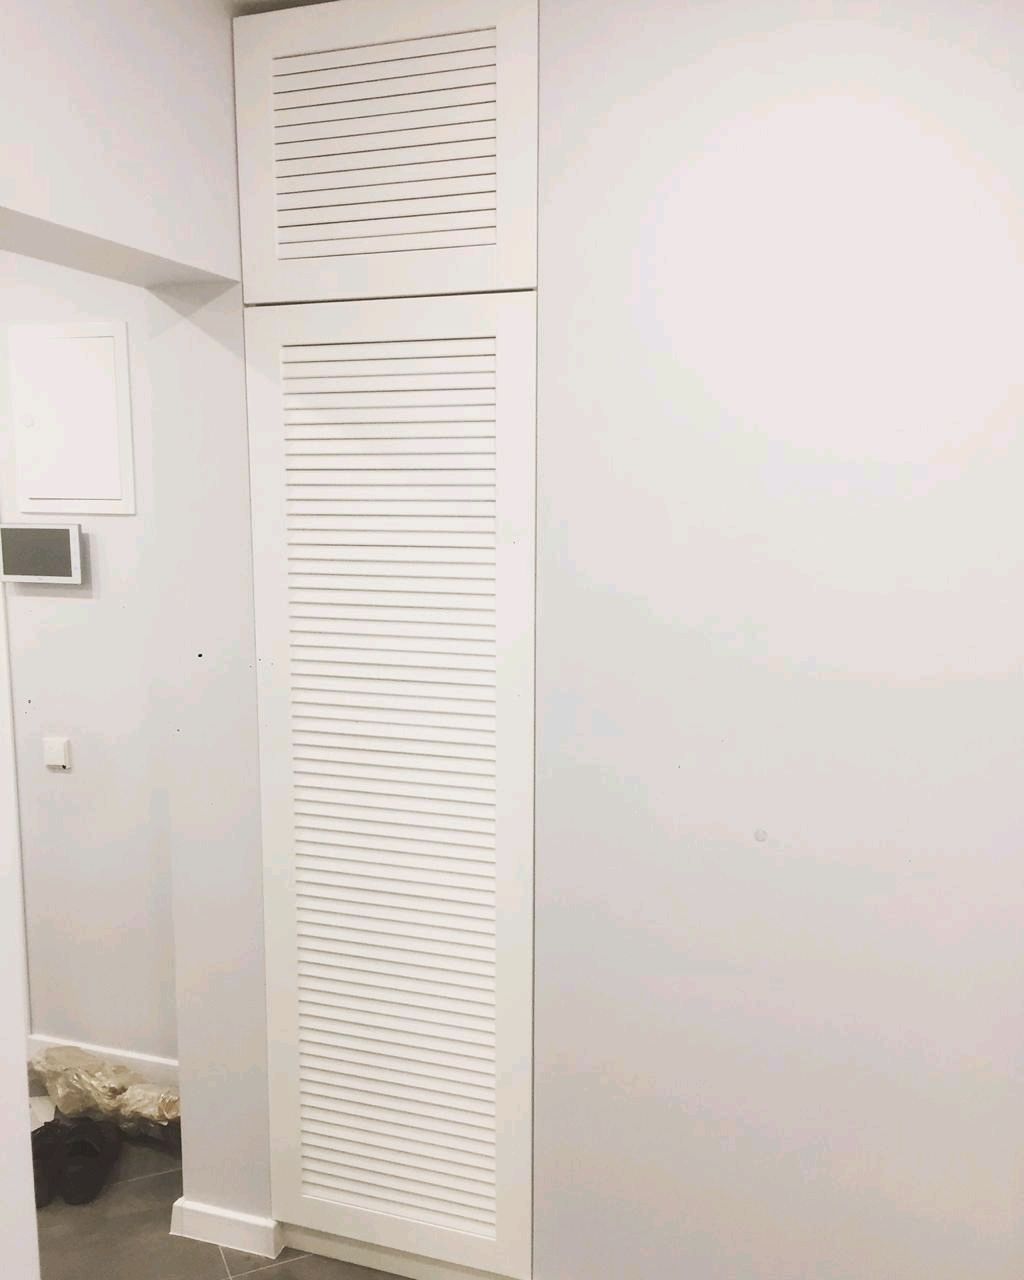 двери для шкафа в ванную из пластика